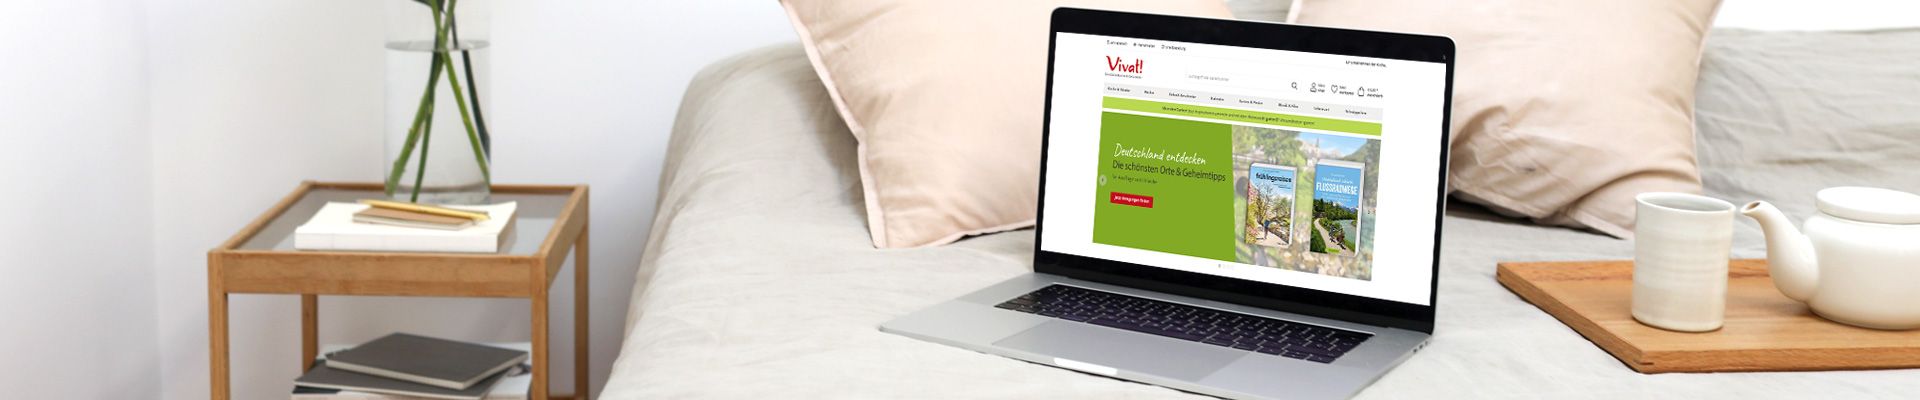 Onlineshop Vivat Startseite